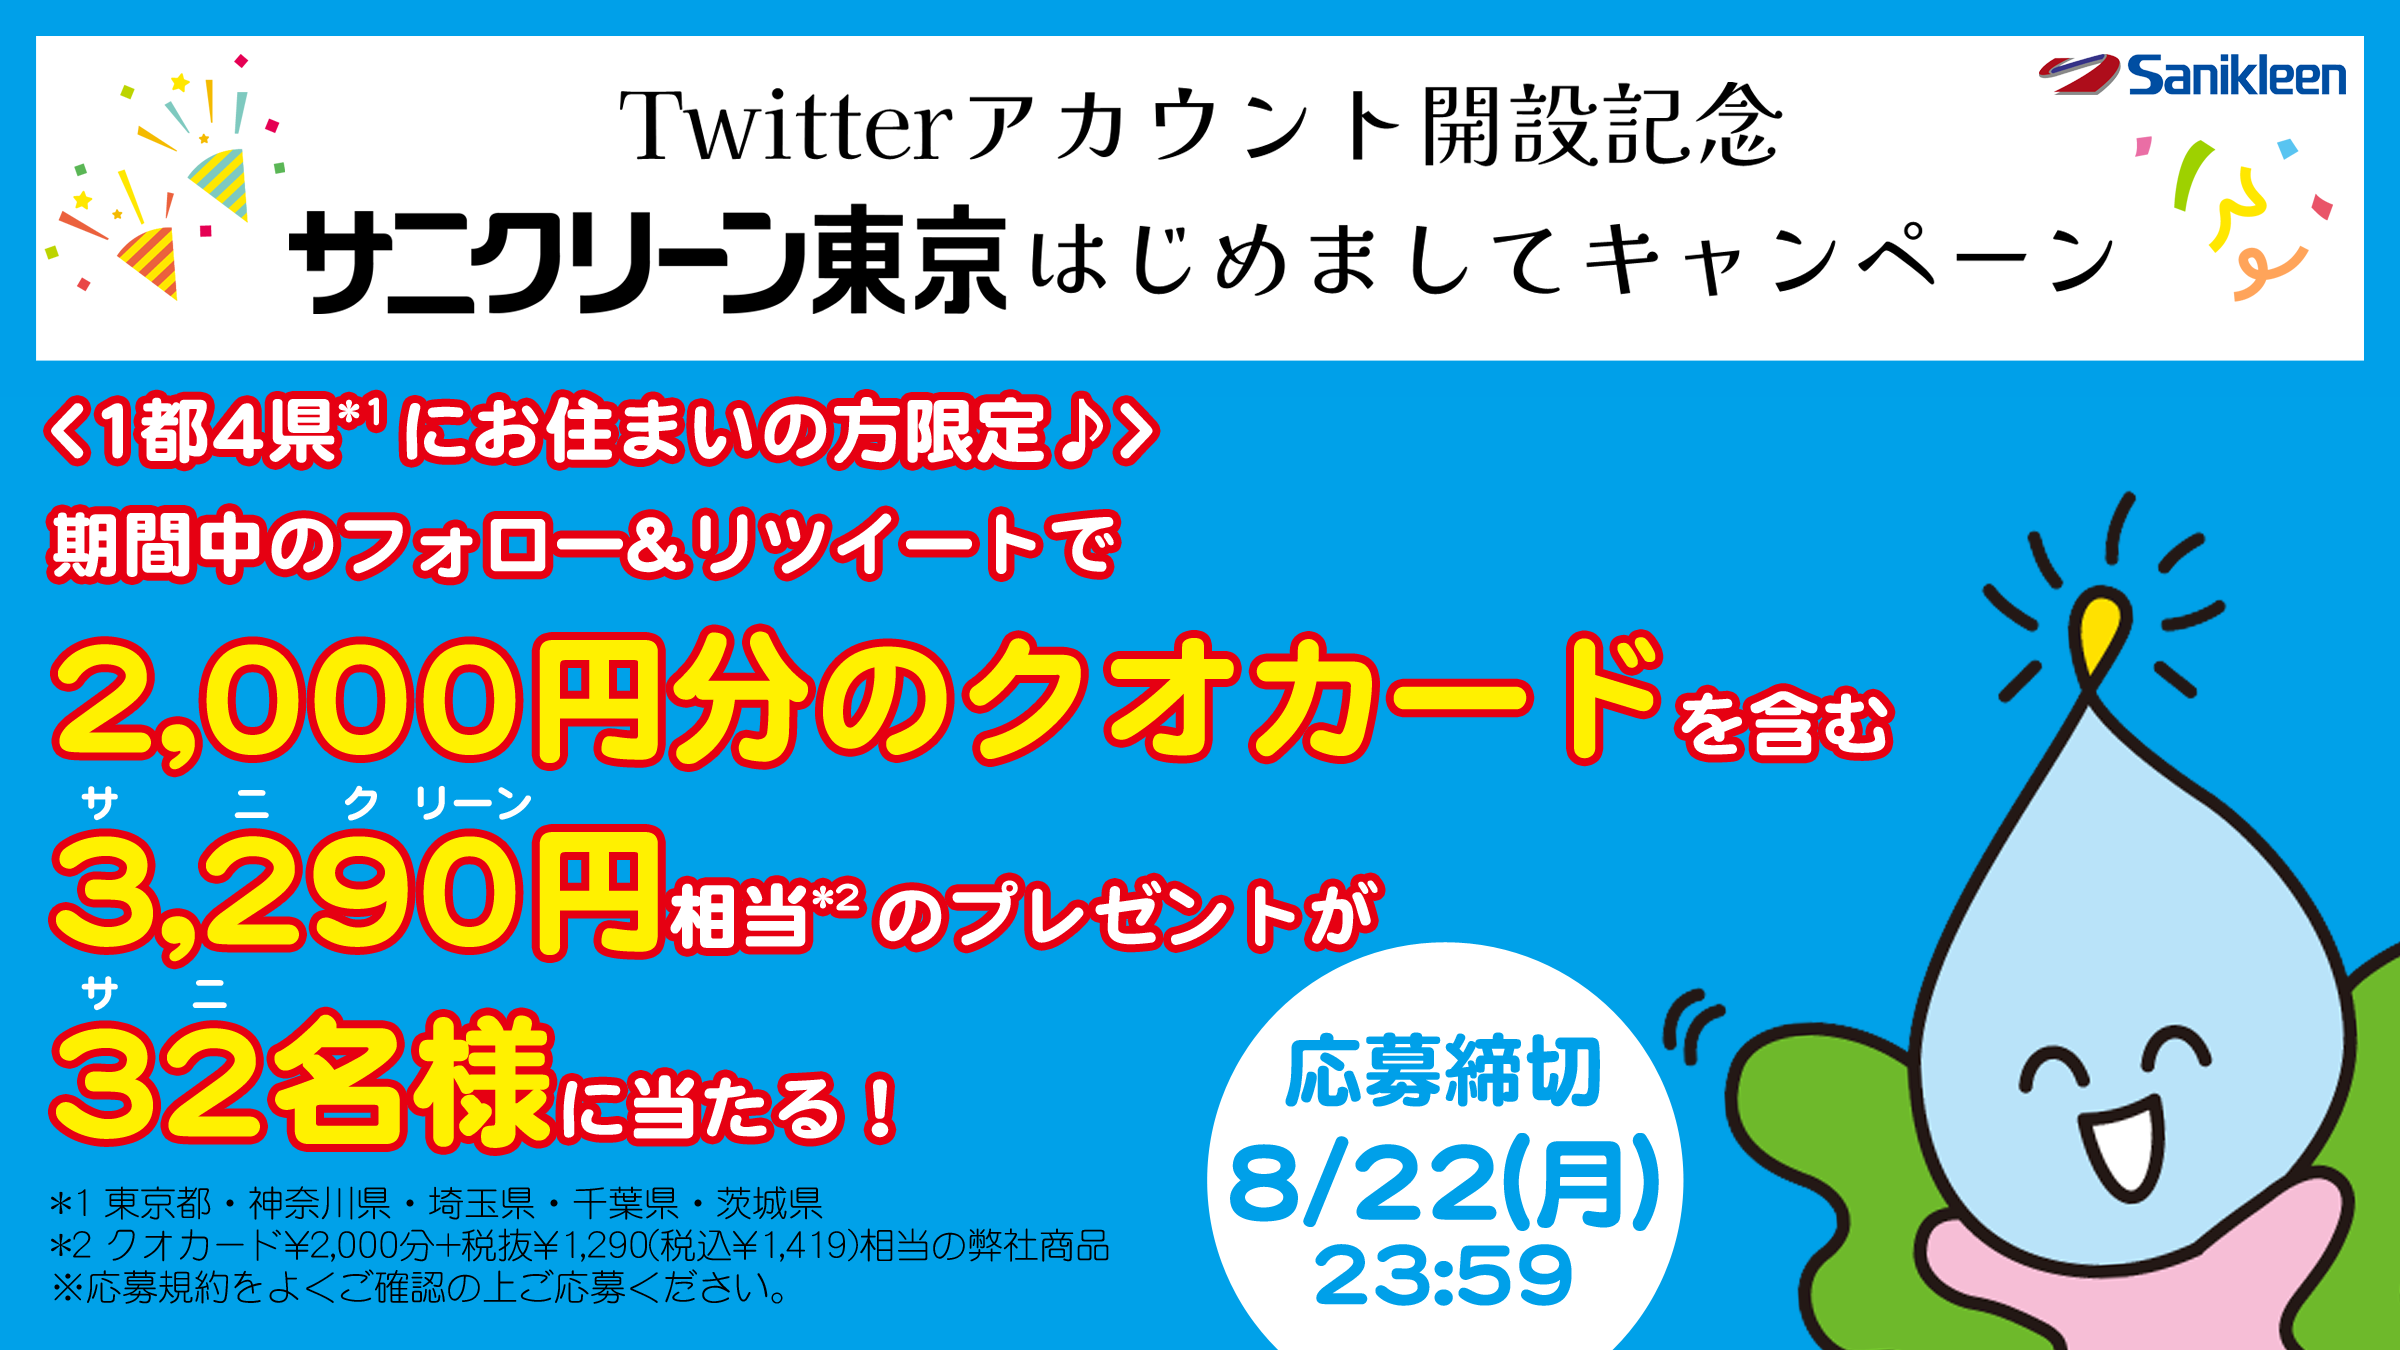 サニクリーン東京Twitterアカウント開設記念キャンペーンのお知らせ